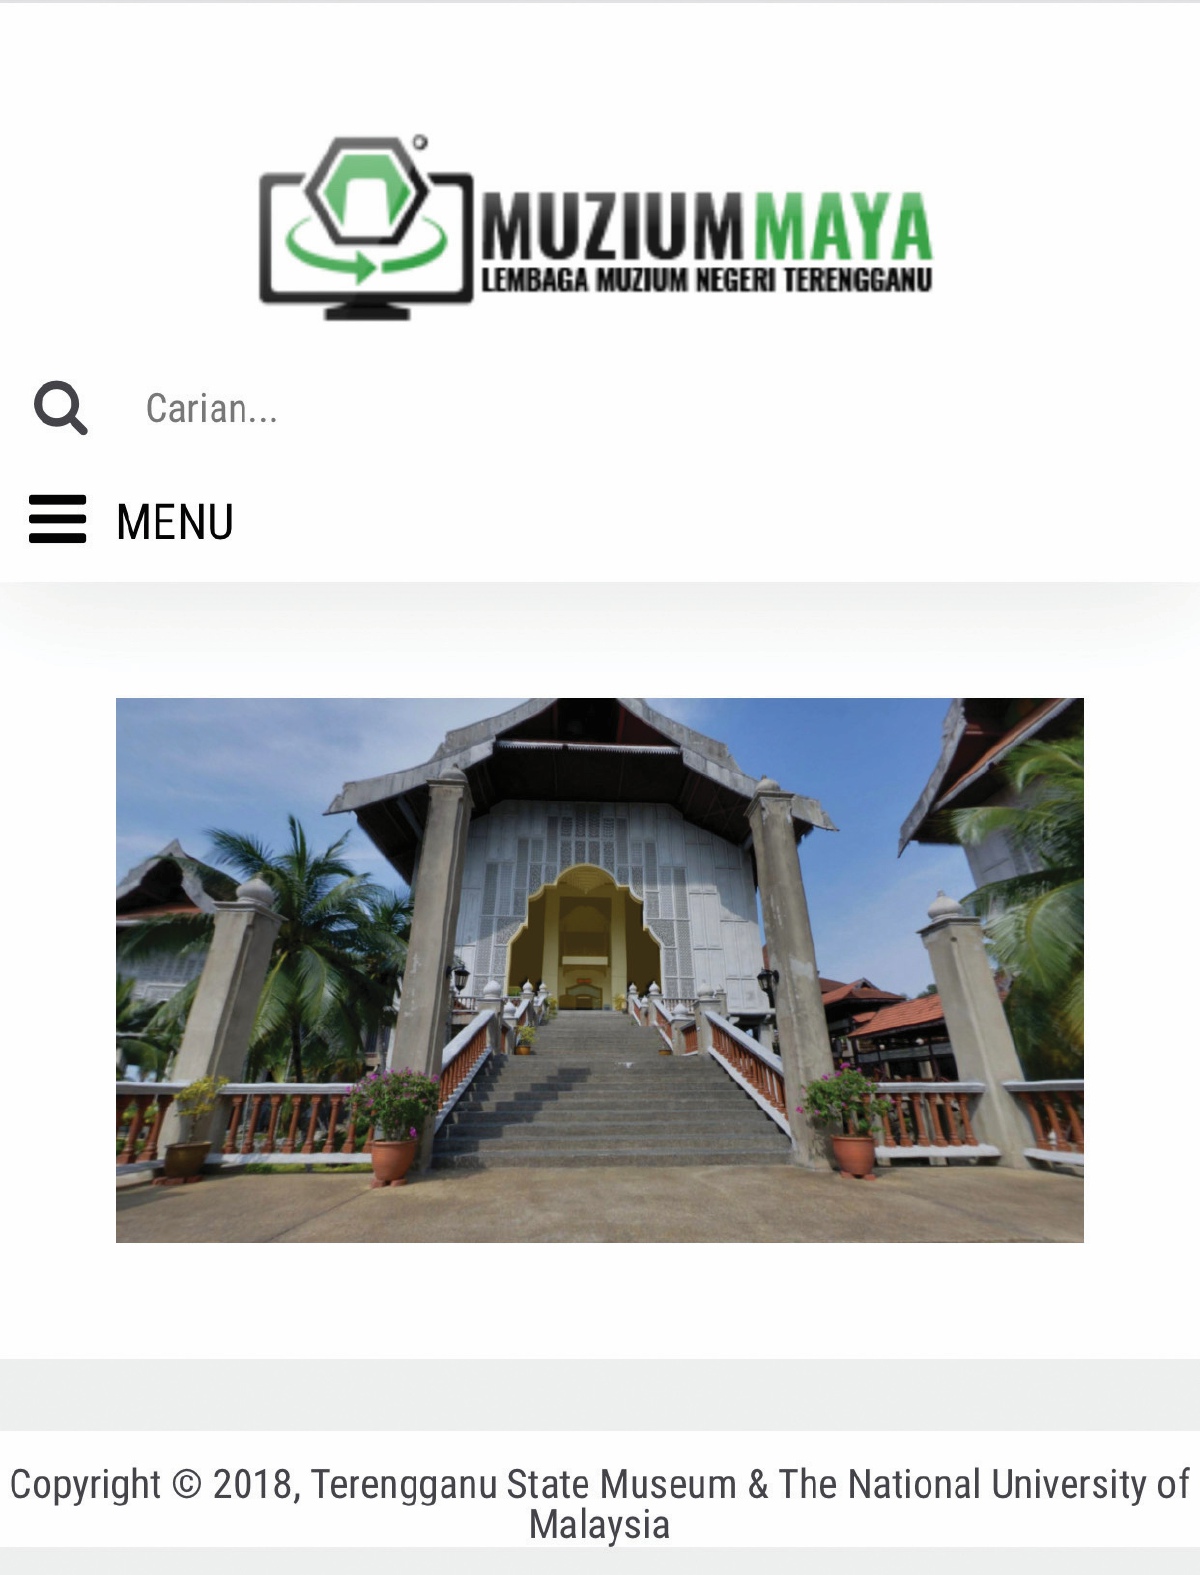 MUZIUM Maya Lembaga Muzium Negeri Terengganu adalah muzium pertama di Malaysia memperkenalkan lawatan secara maya sejak beberapa tahun lalu.